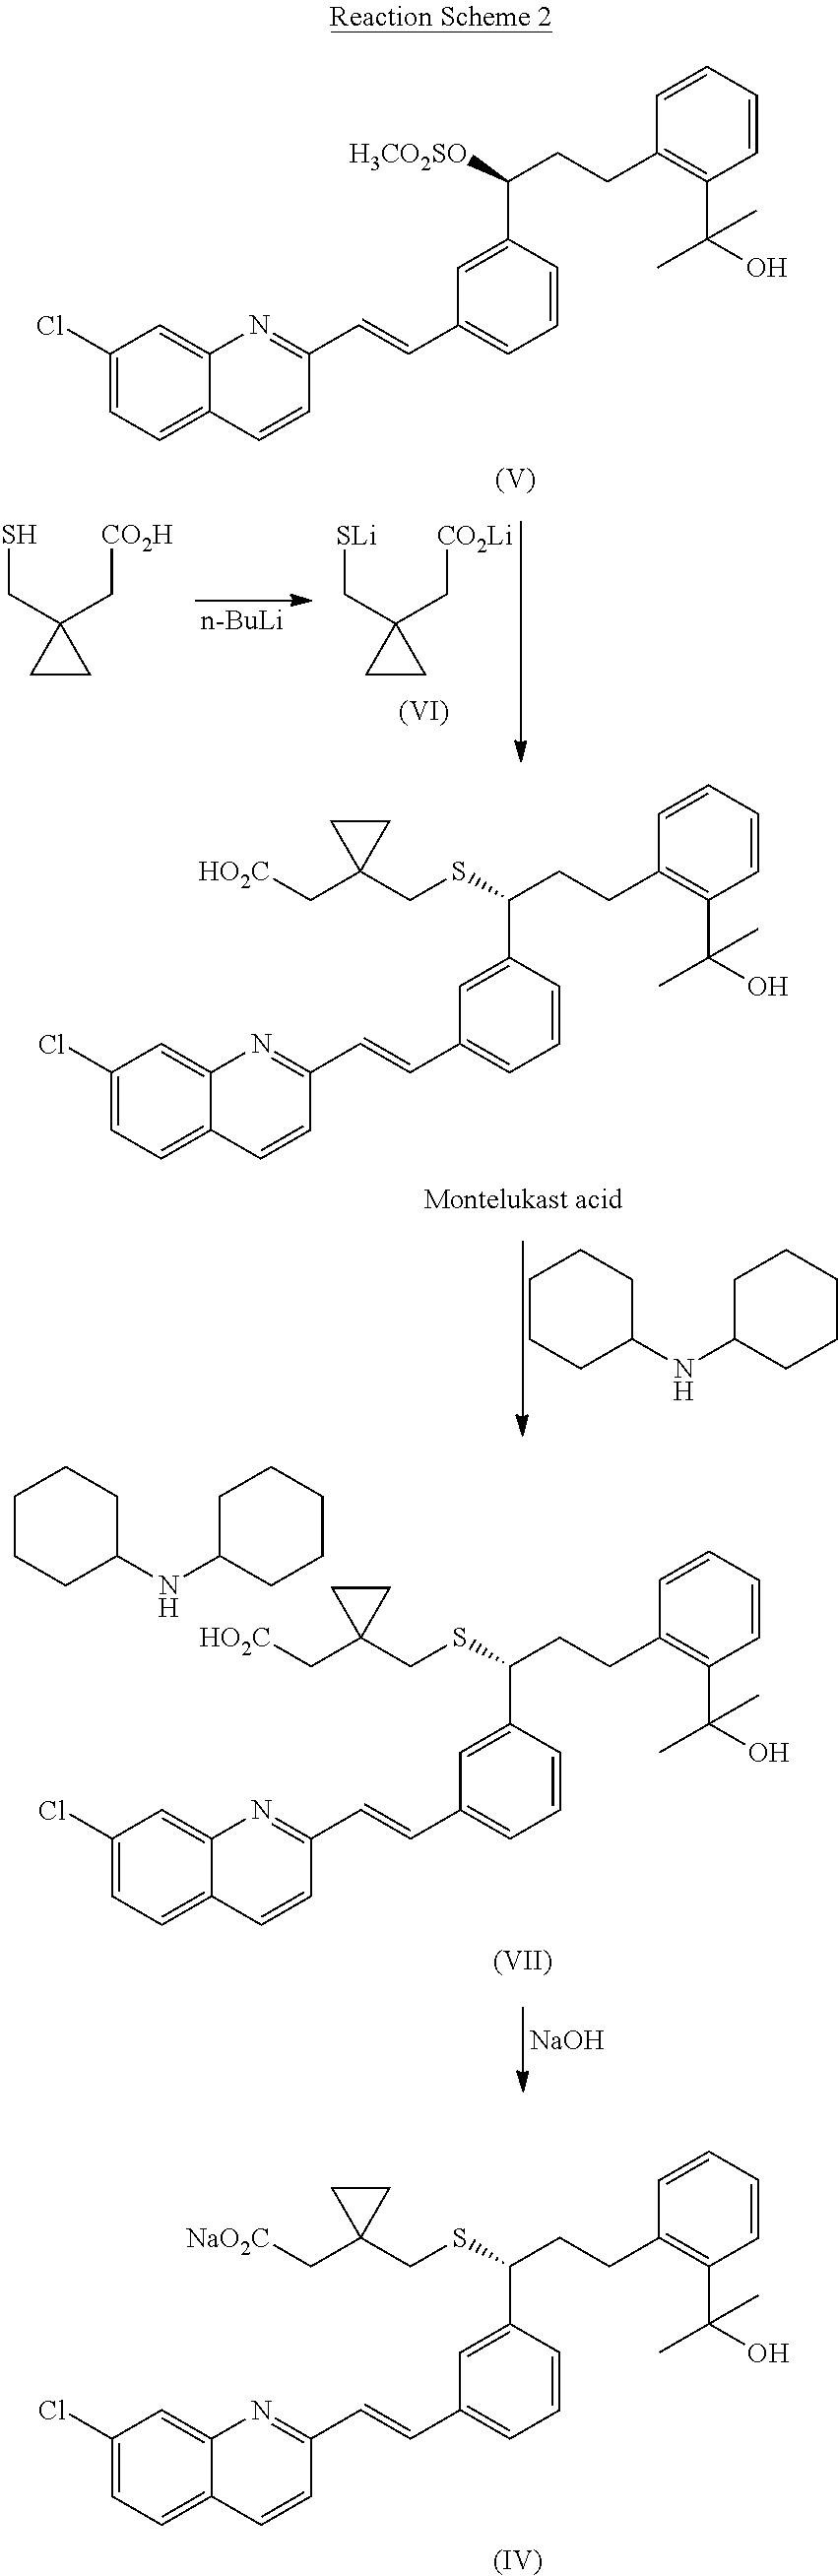 Method for preparation of Montelukast acid in ionic liquid medium